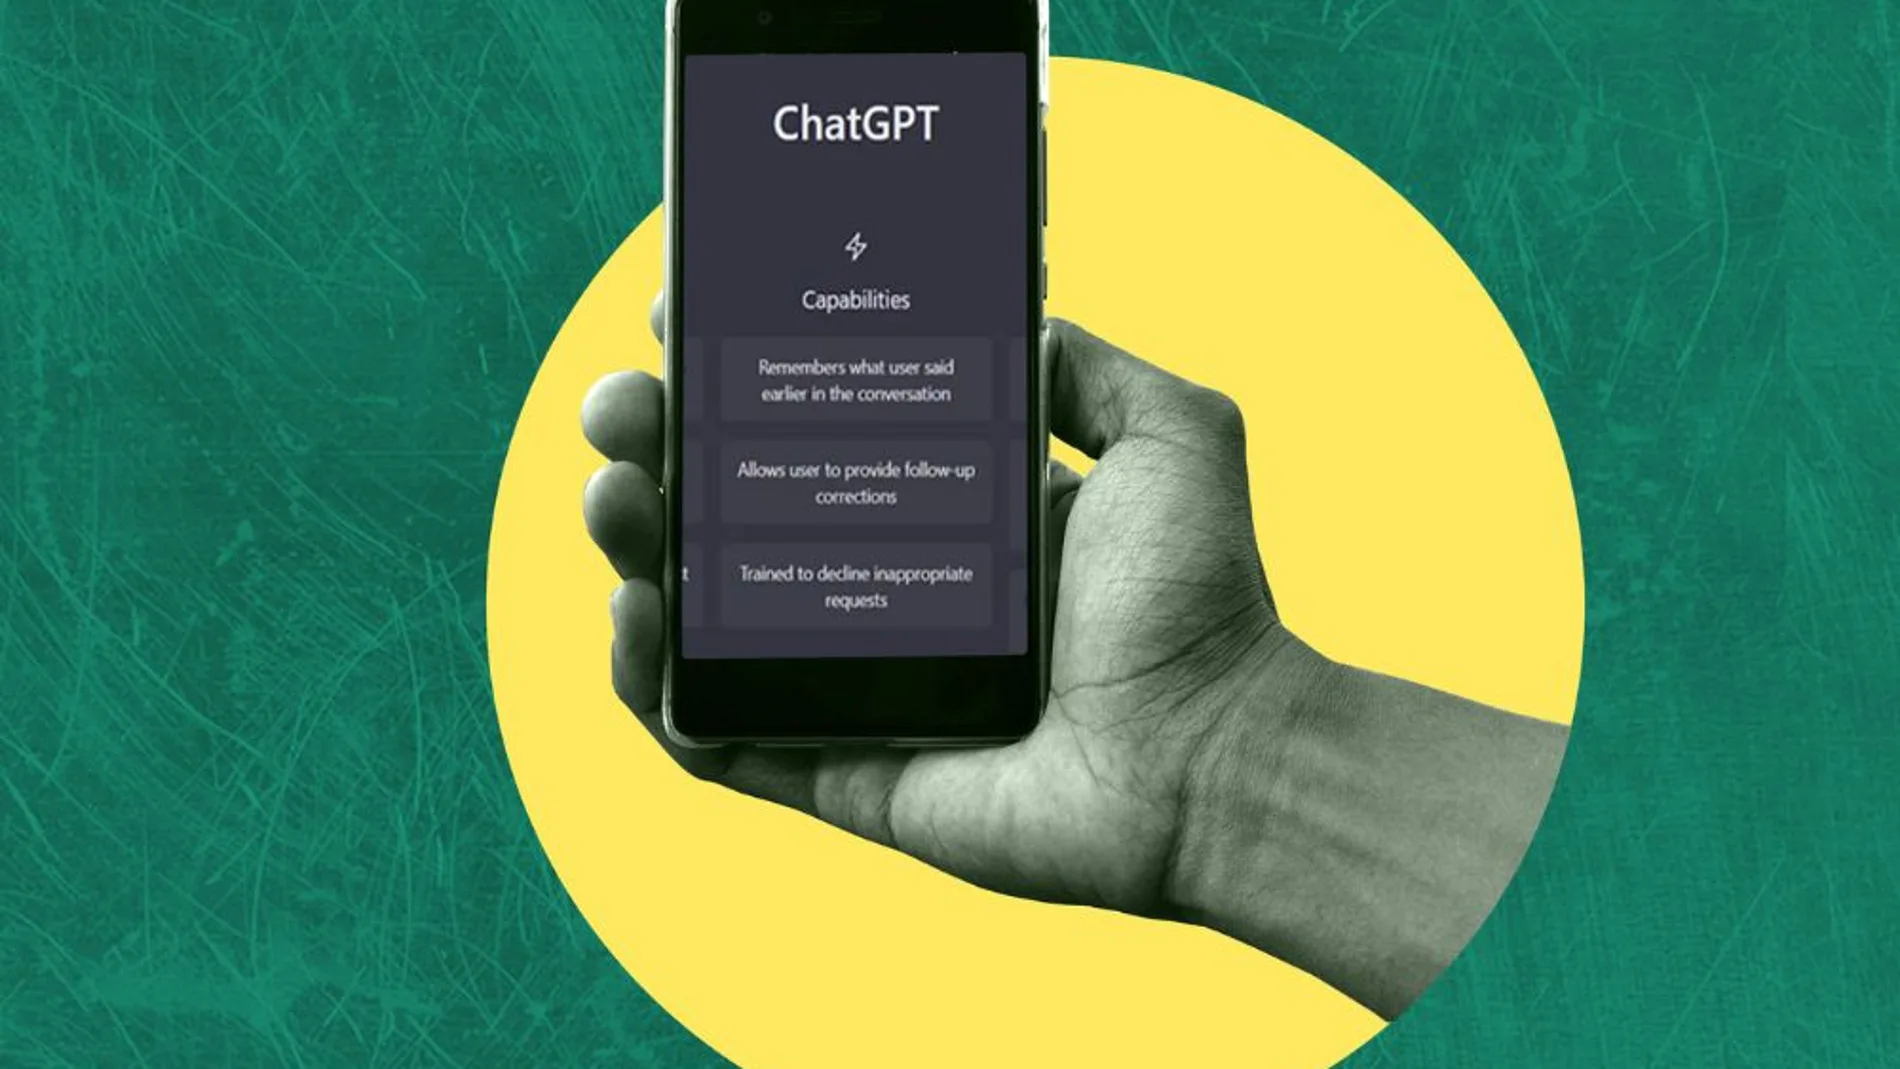 Vantagens de usar o Chat GPT no seu dia a dia ‣ Blog da Flavi